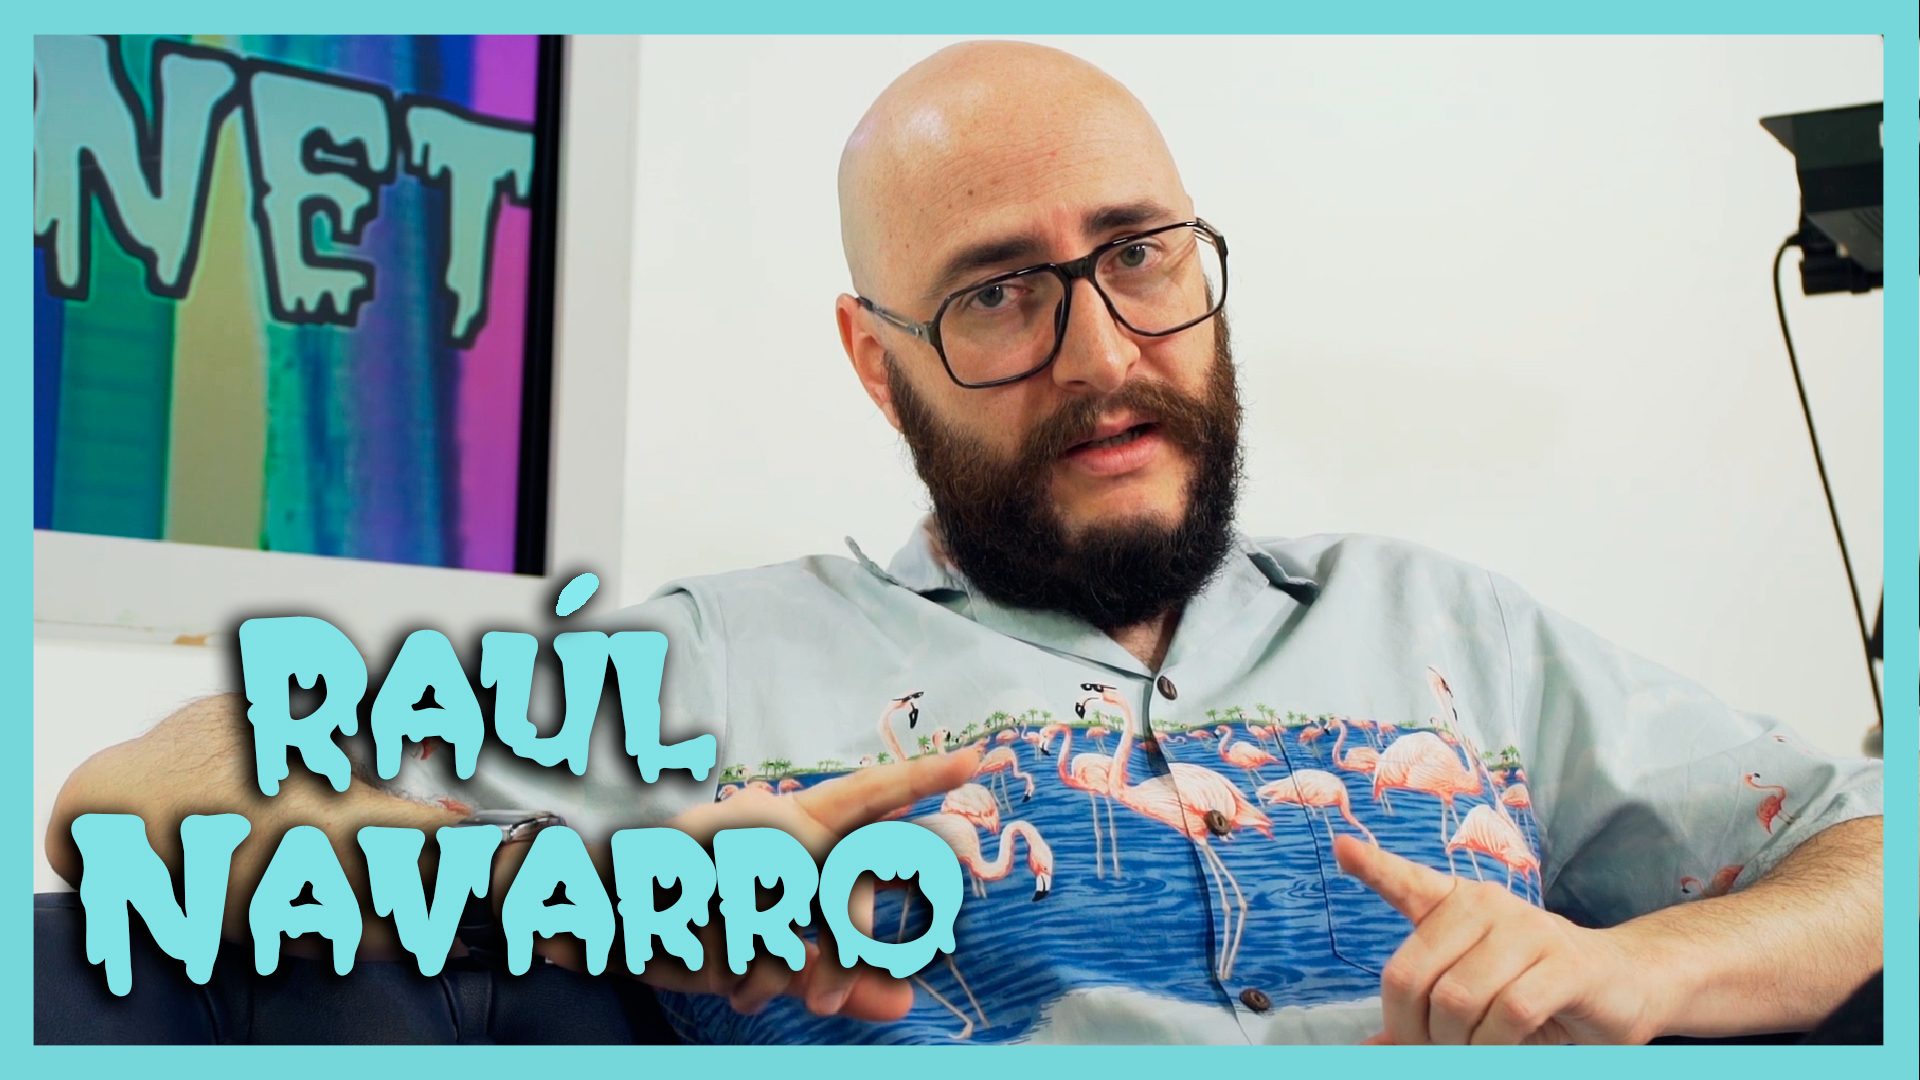 Temporada 1 Raúl Navarro: Internet quiere ligar con nosotros